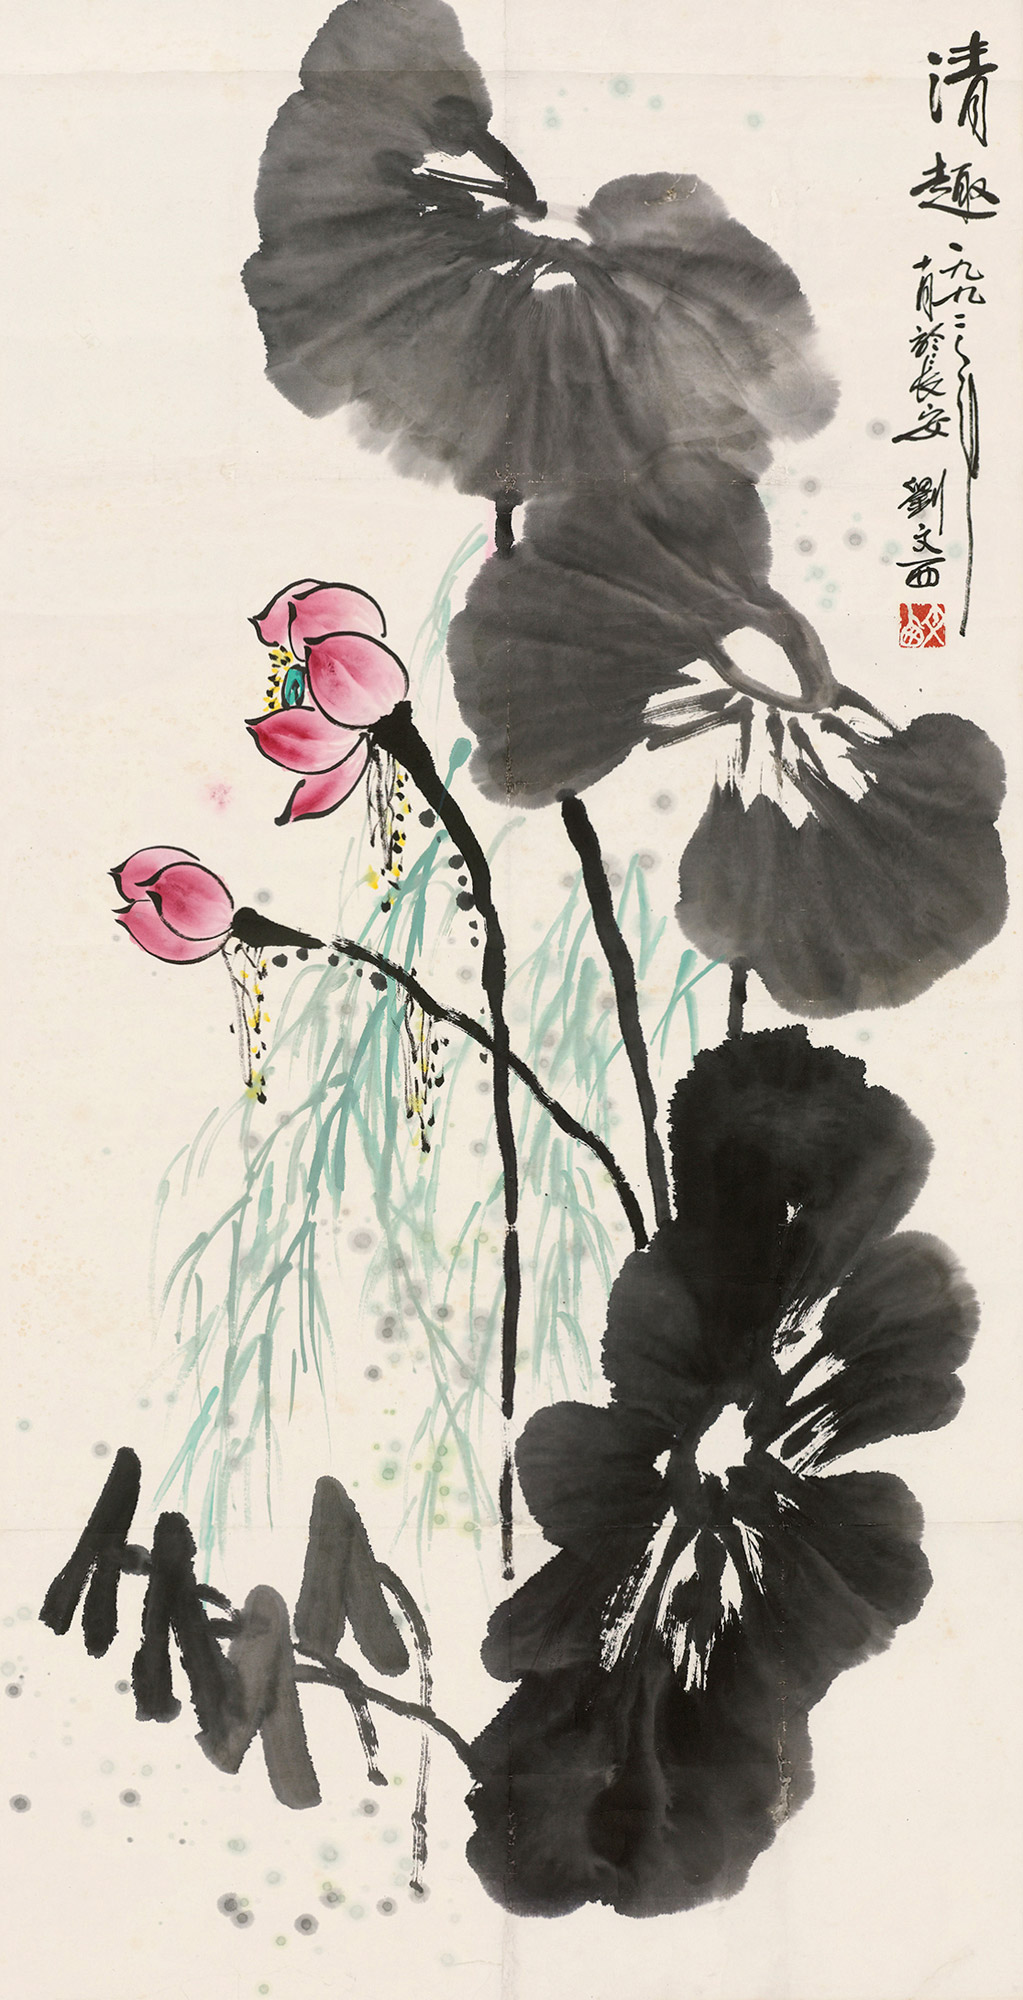 2平尺拍品描述刘文西 花卉  纸本 镜片款识:一九九二年十月於长安